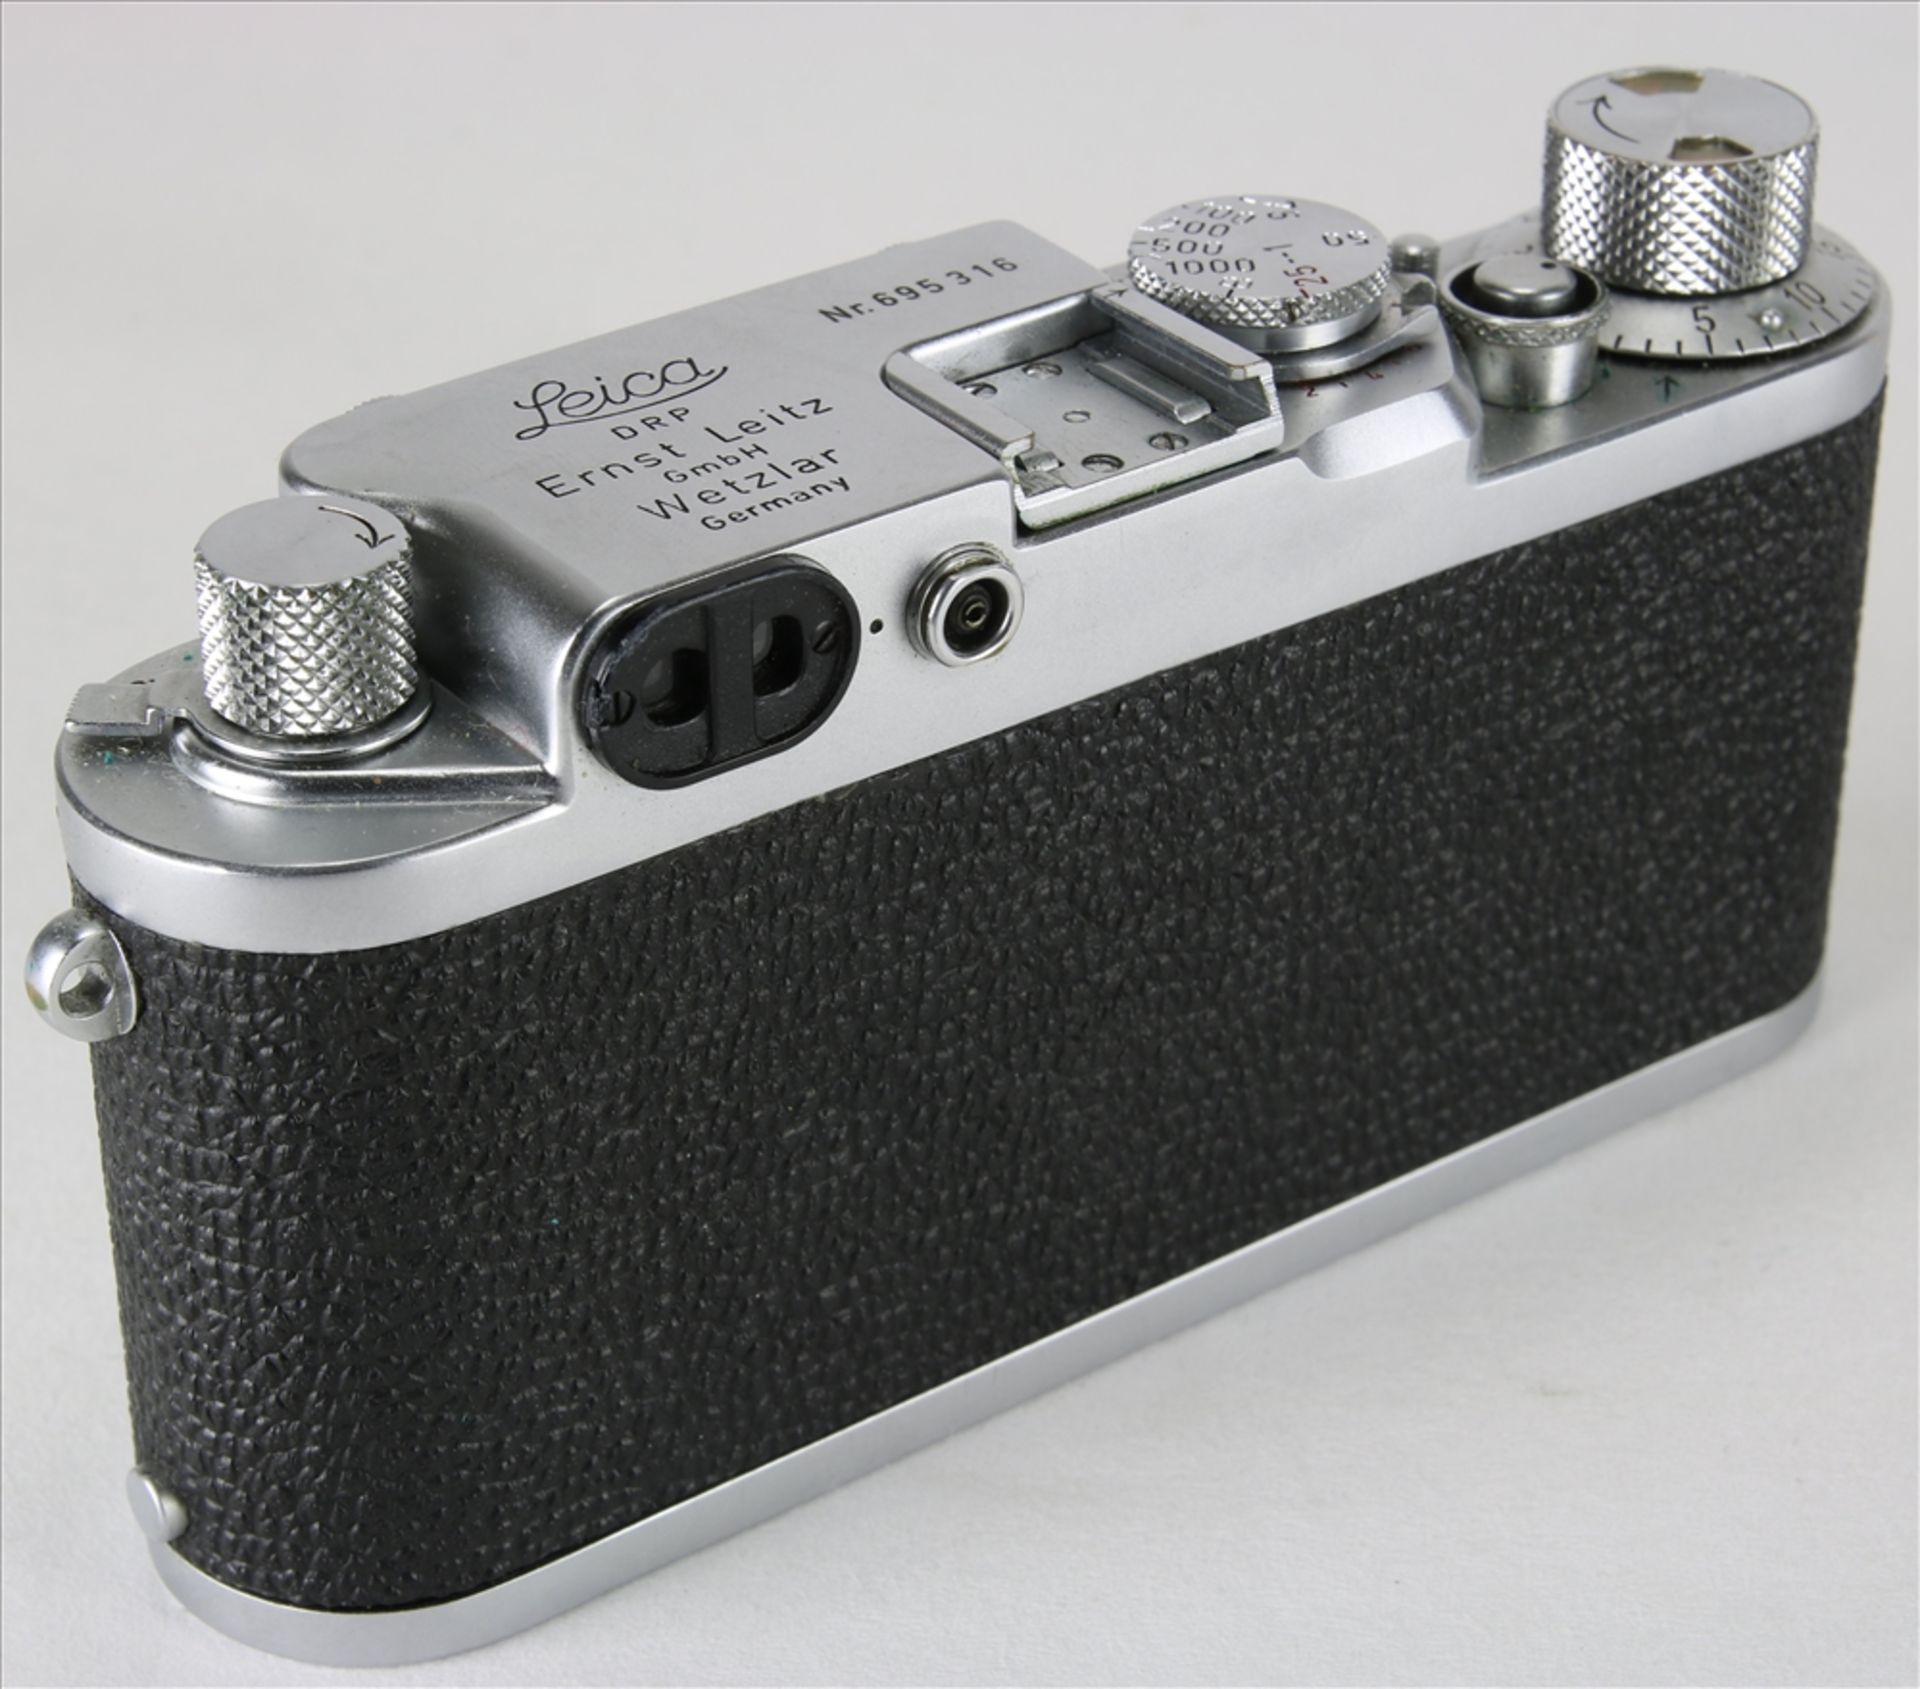 Leica III f vintage Kamera Ernst Leitz GmbH Wetzlar 1954. Nummer 695316. Elmar f=5, 1:3,5 - Bild 3 aus 6